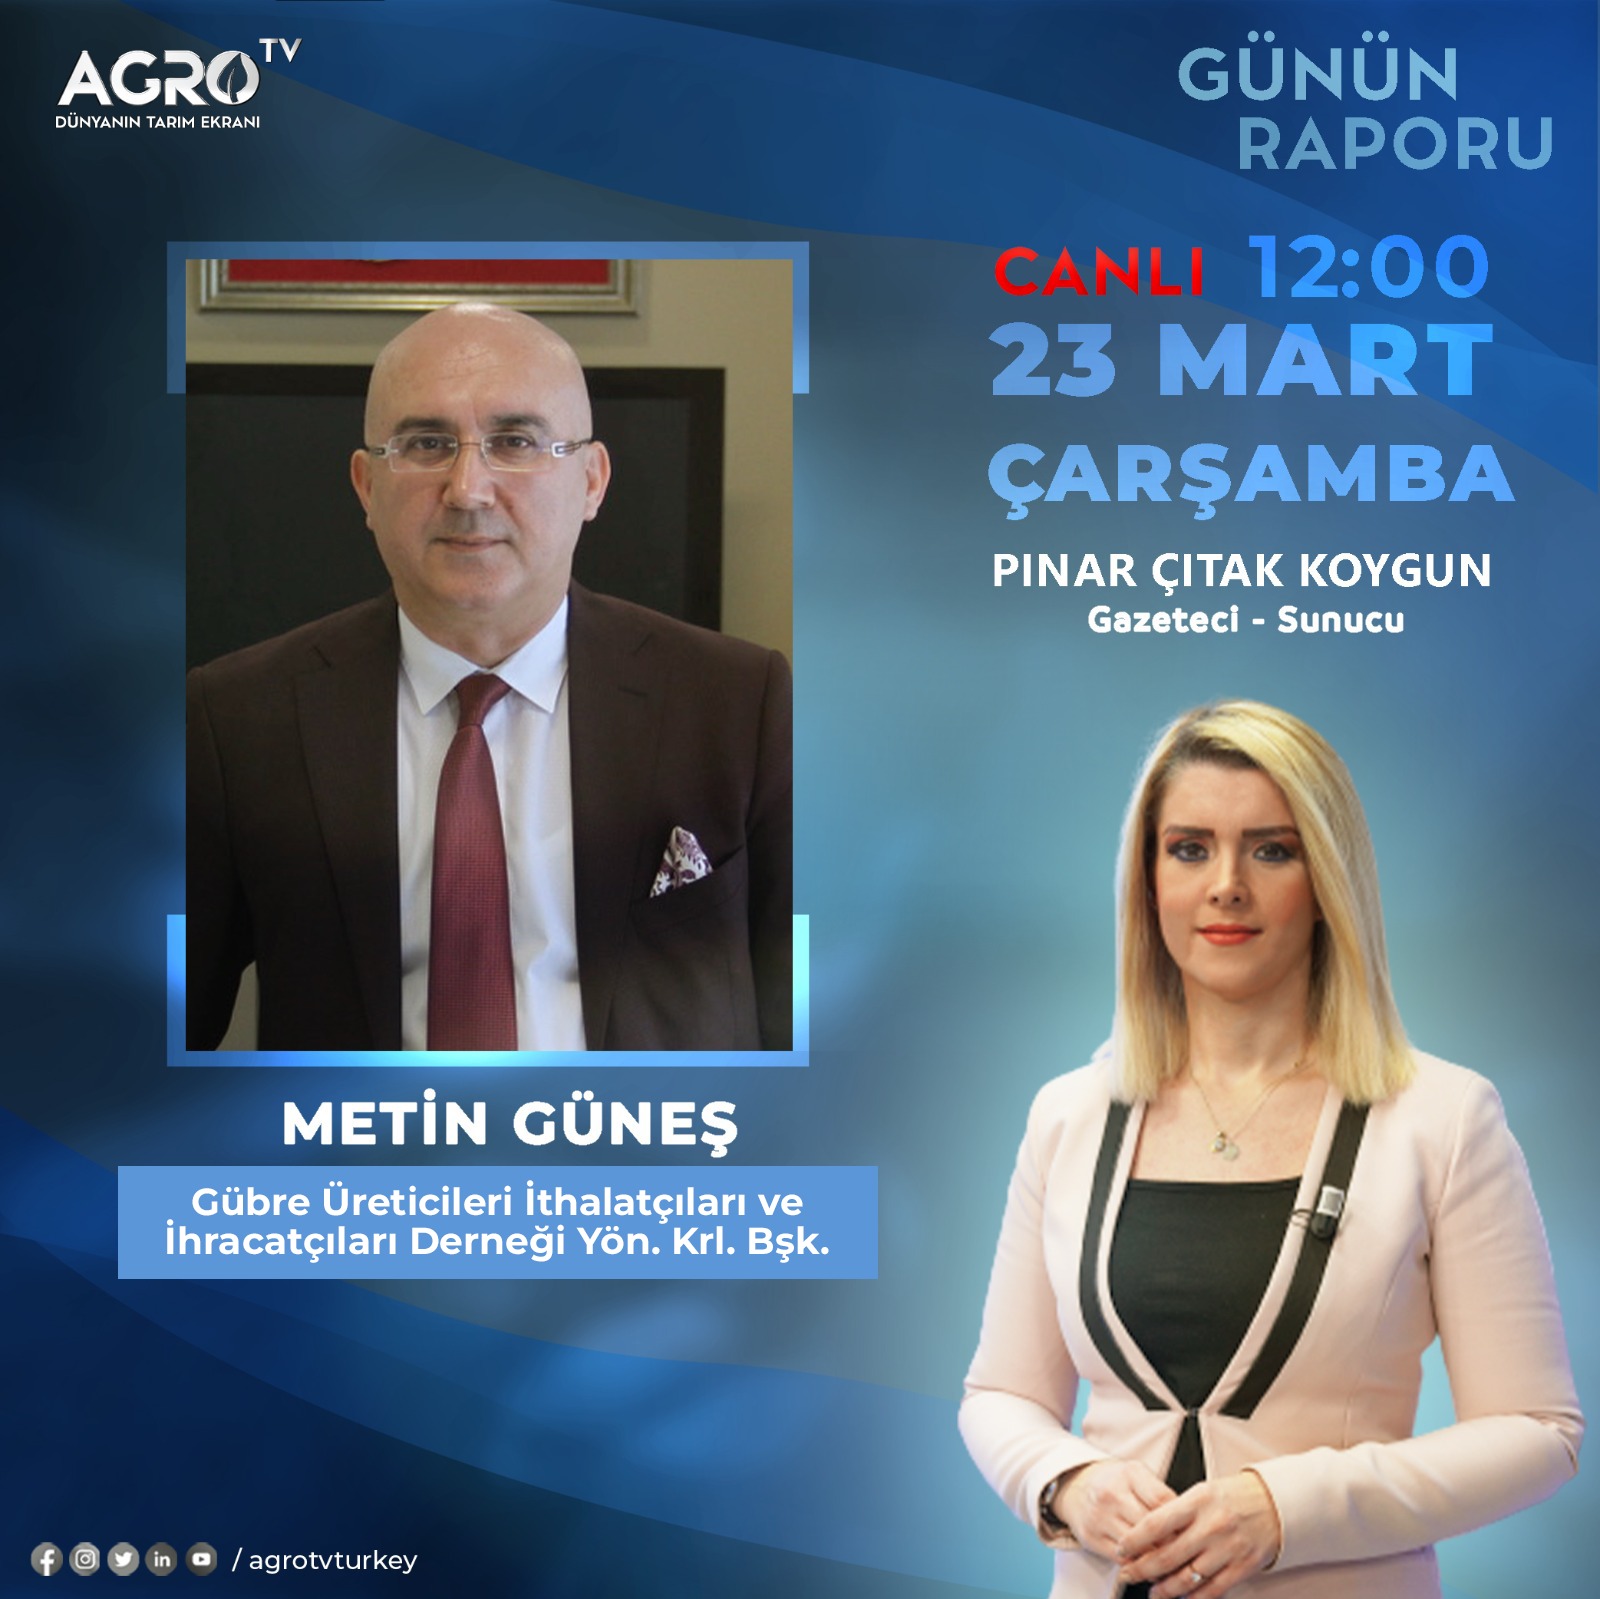 AGRO TV Günn Raporu Programı Canlı Yayın Konuğu